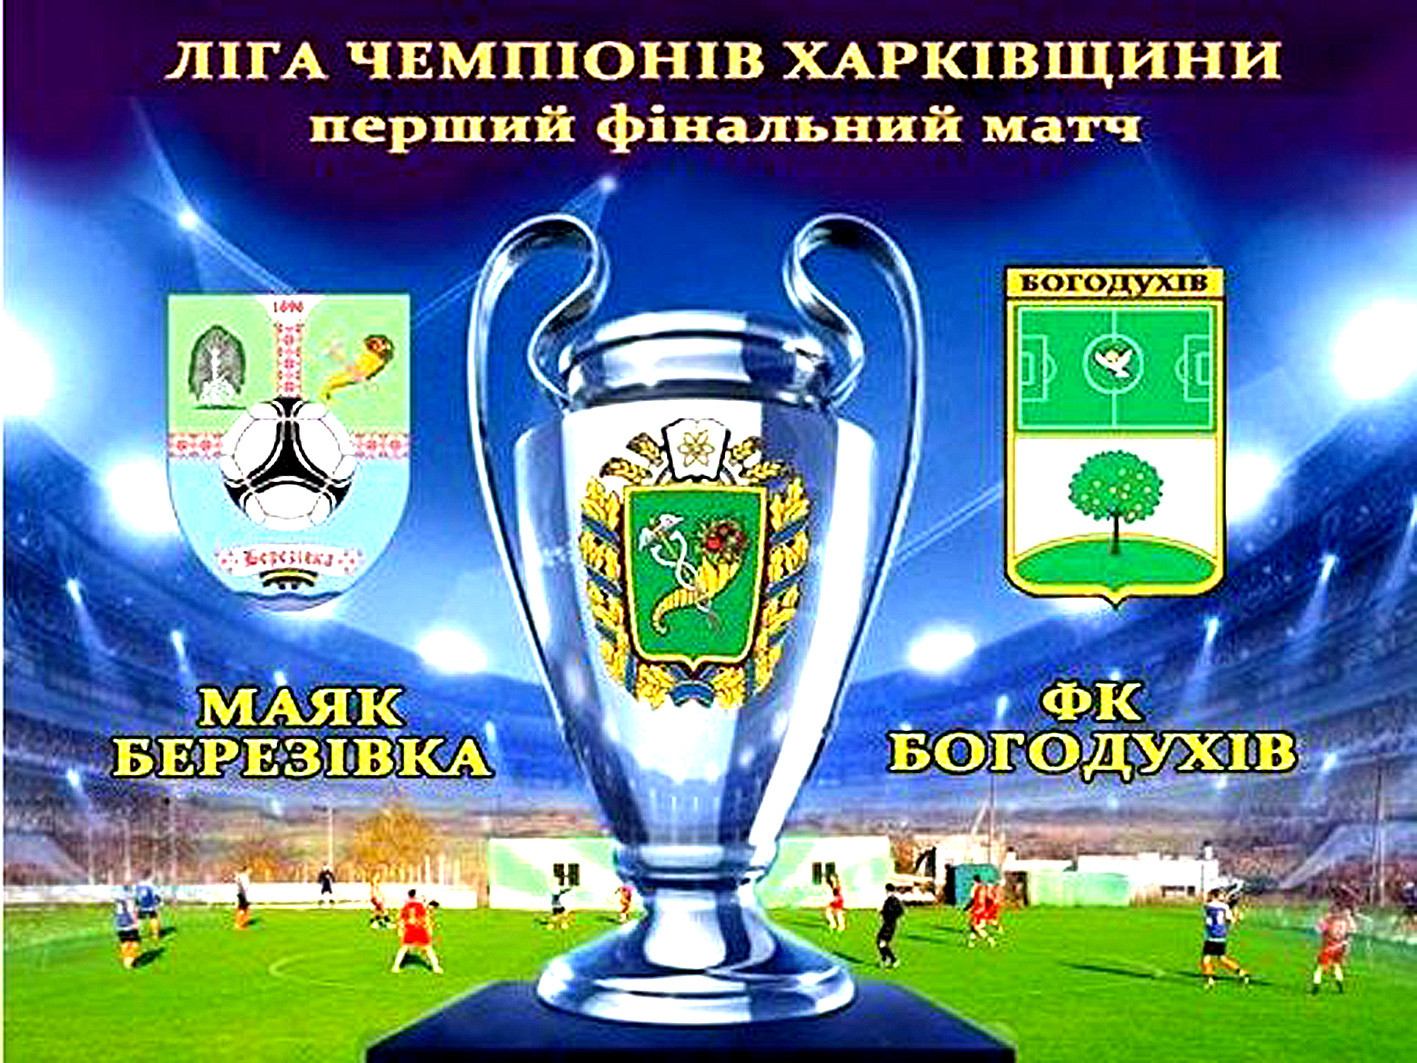 Визначено місце та час проведення фінальних матчів Ліги Чемпіонів Харківщини